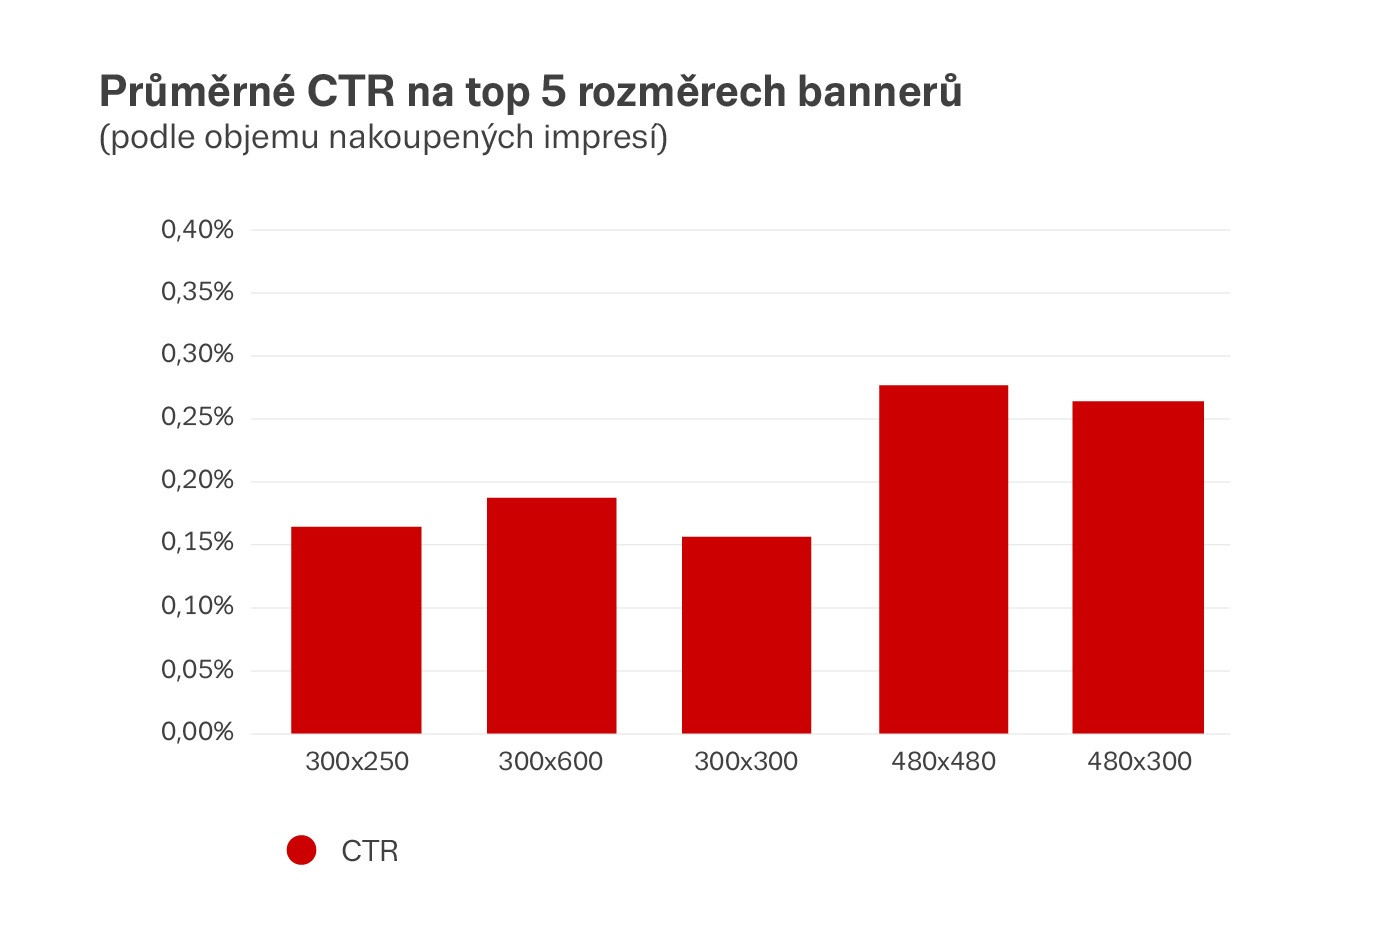 Průměrné CTR na top 5 rozměrech bannerů, zdroj: Seznam.cz, Adform